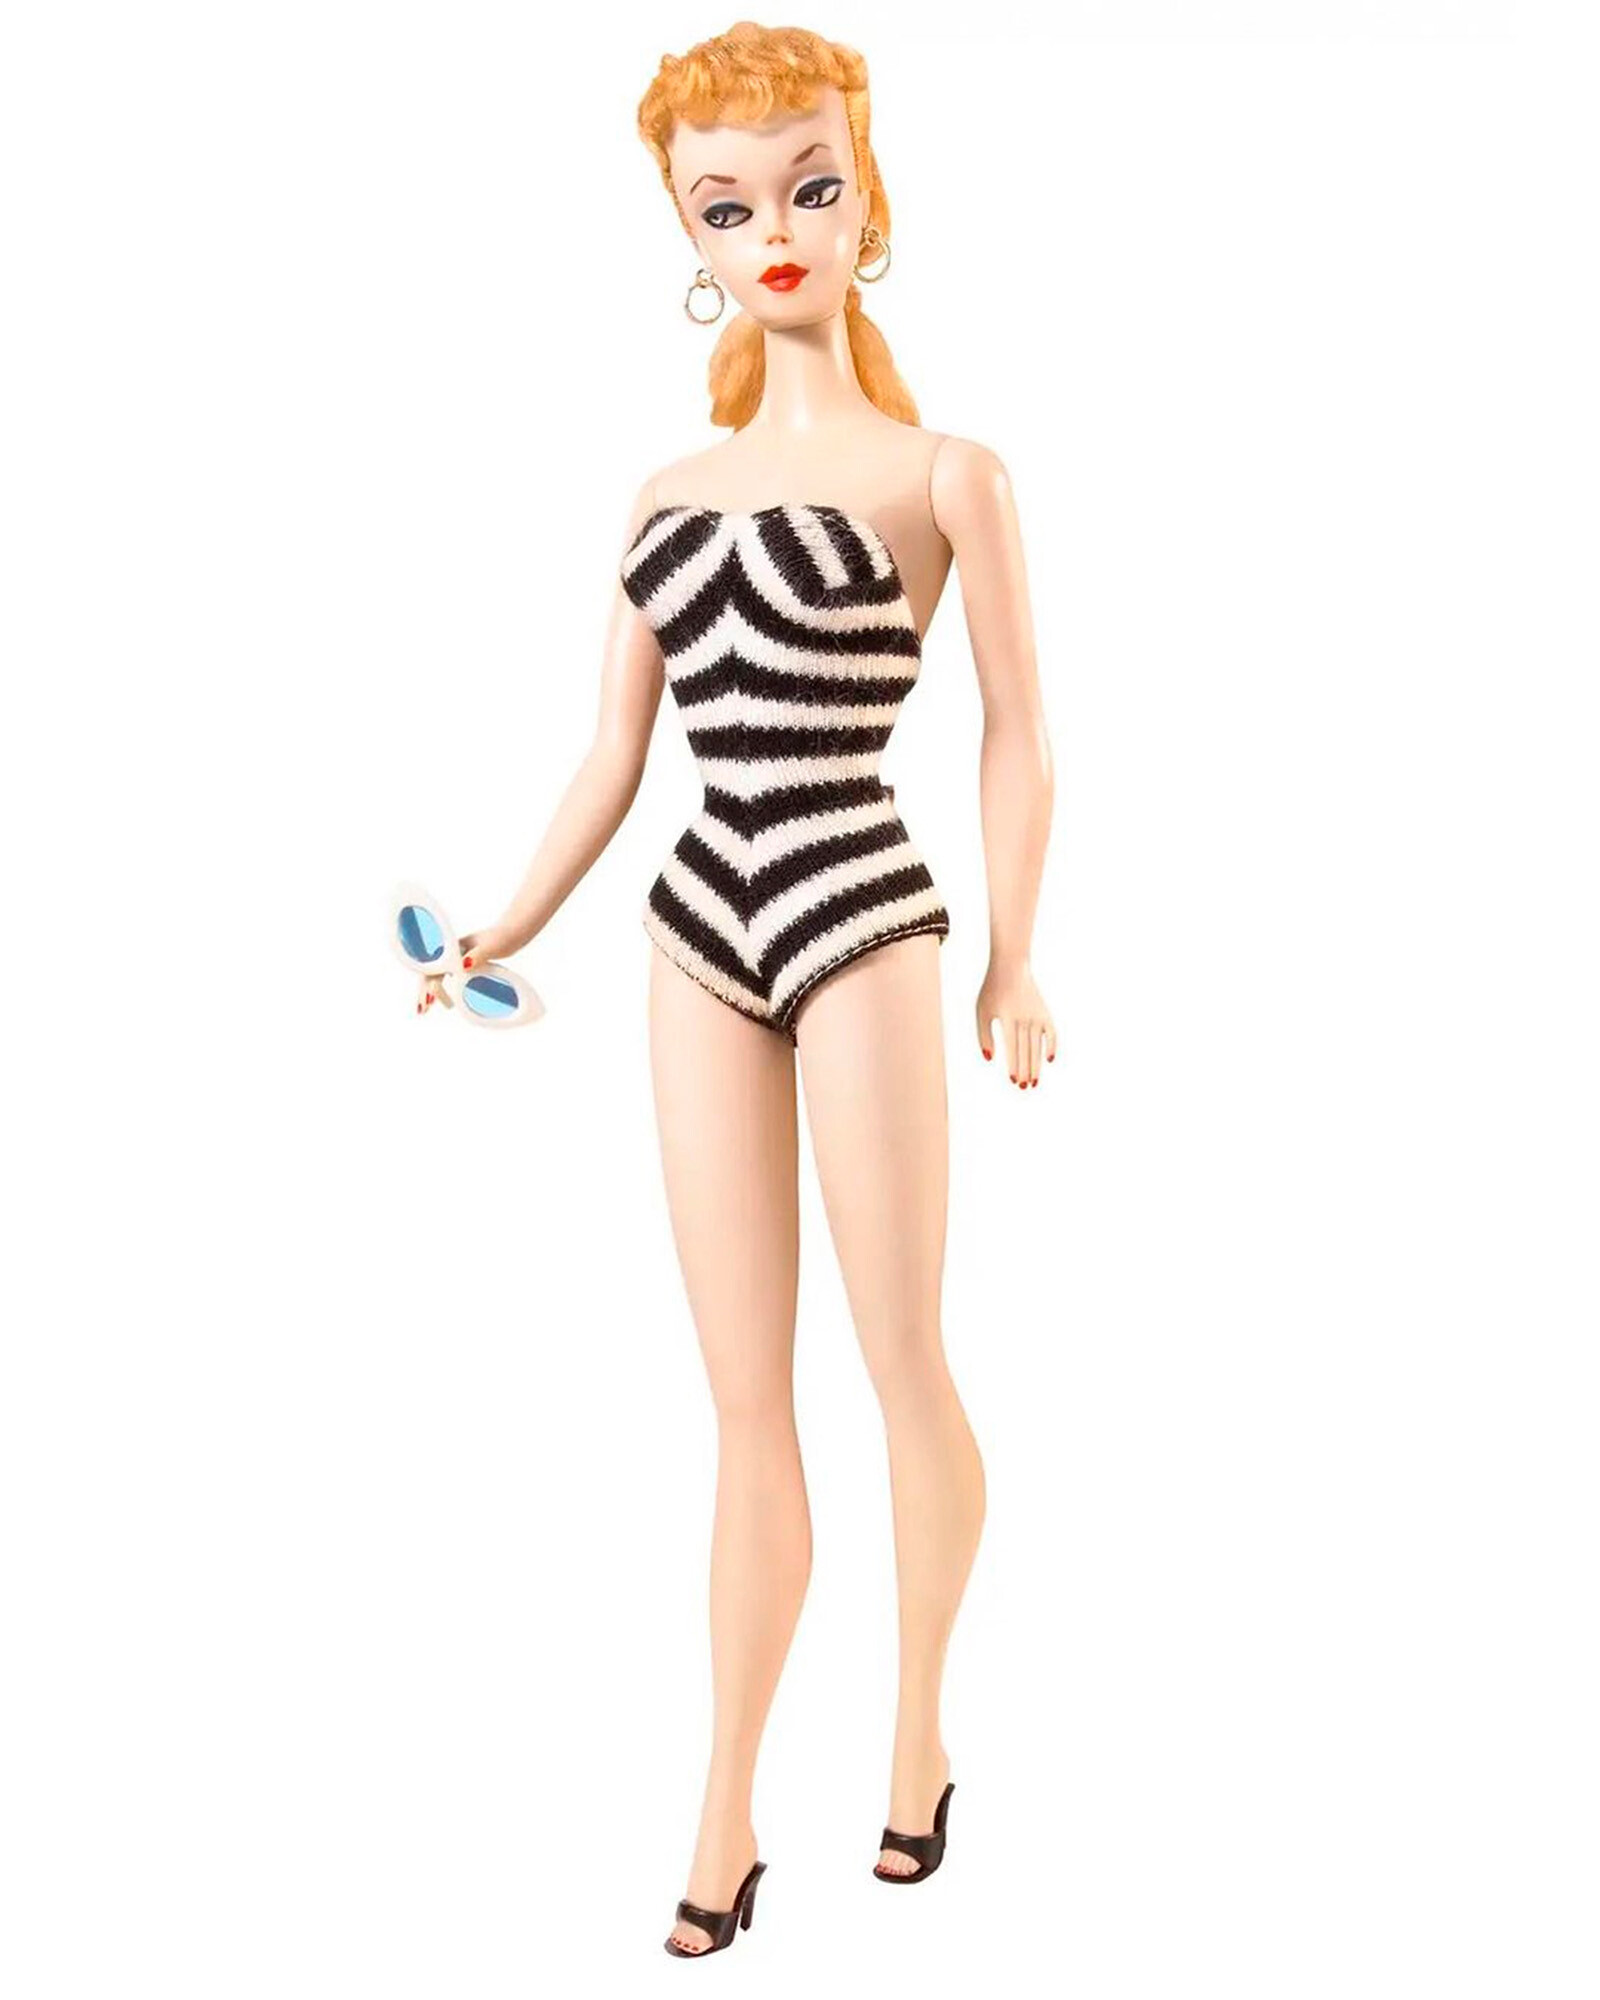 Оригинальный образ Барби культовой игрушки 1959 года